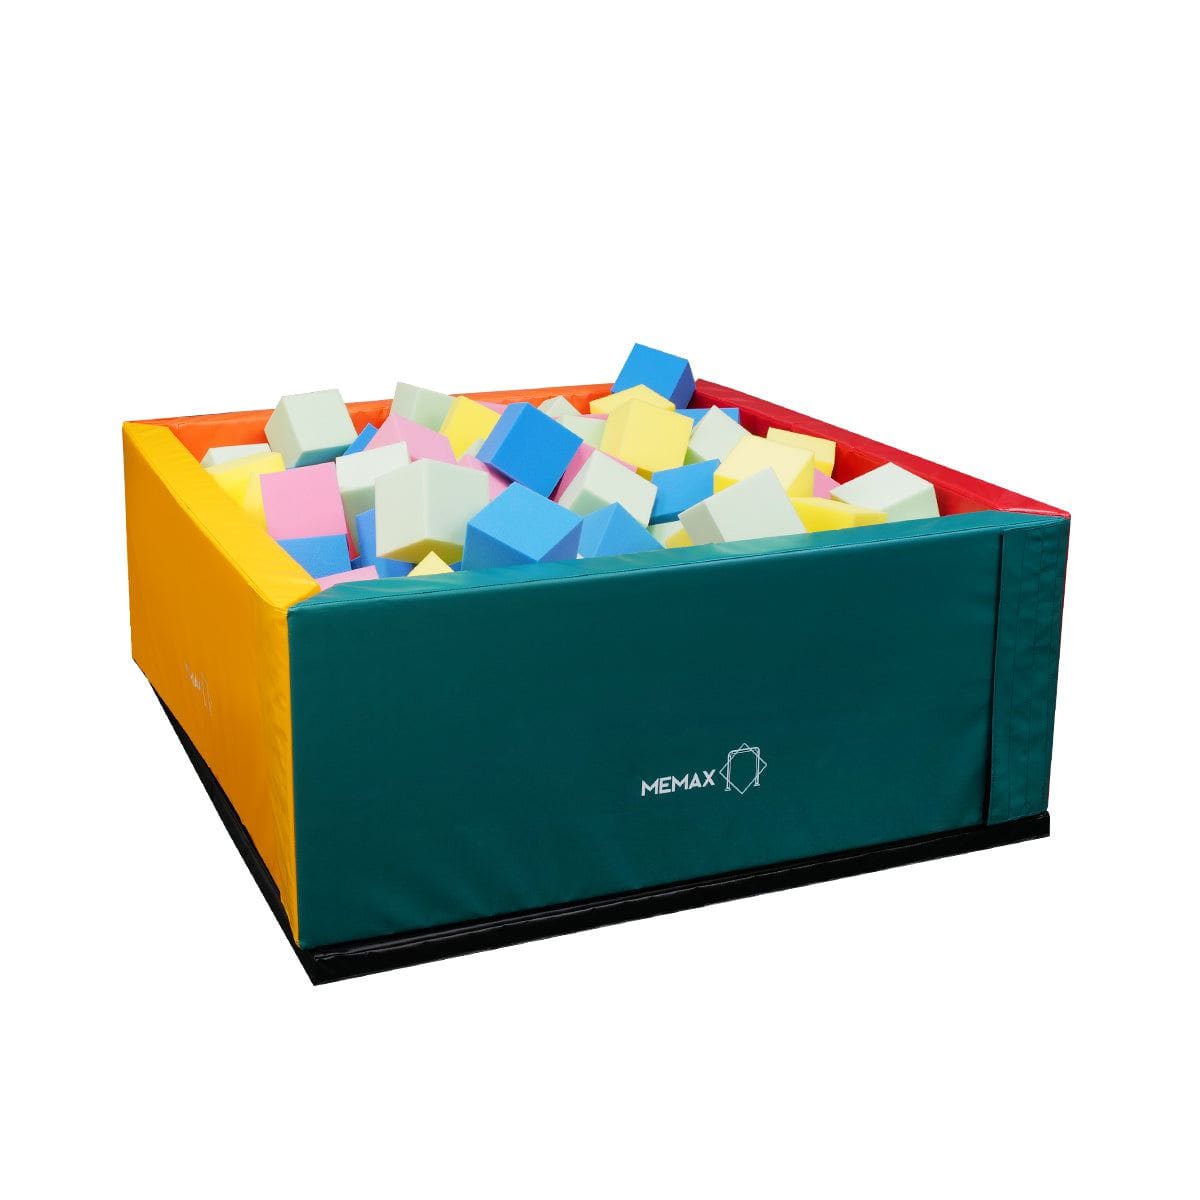 MEMAX Foam Pit Cubes - 100 Cubes